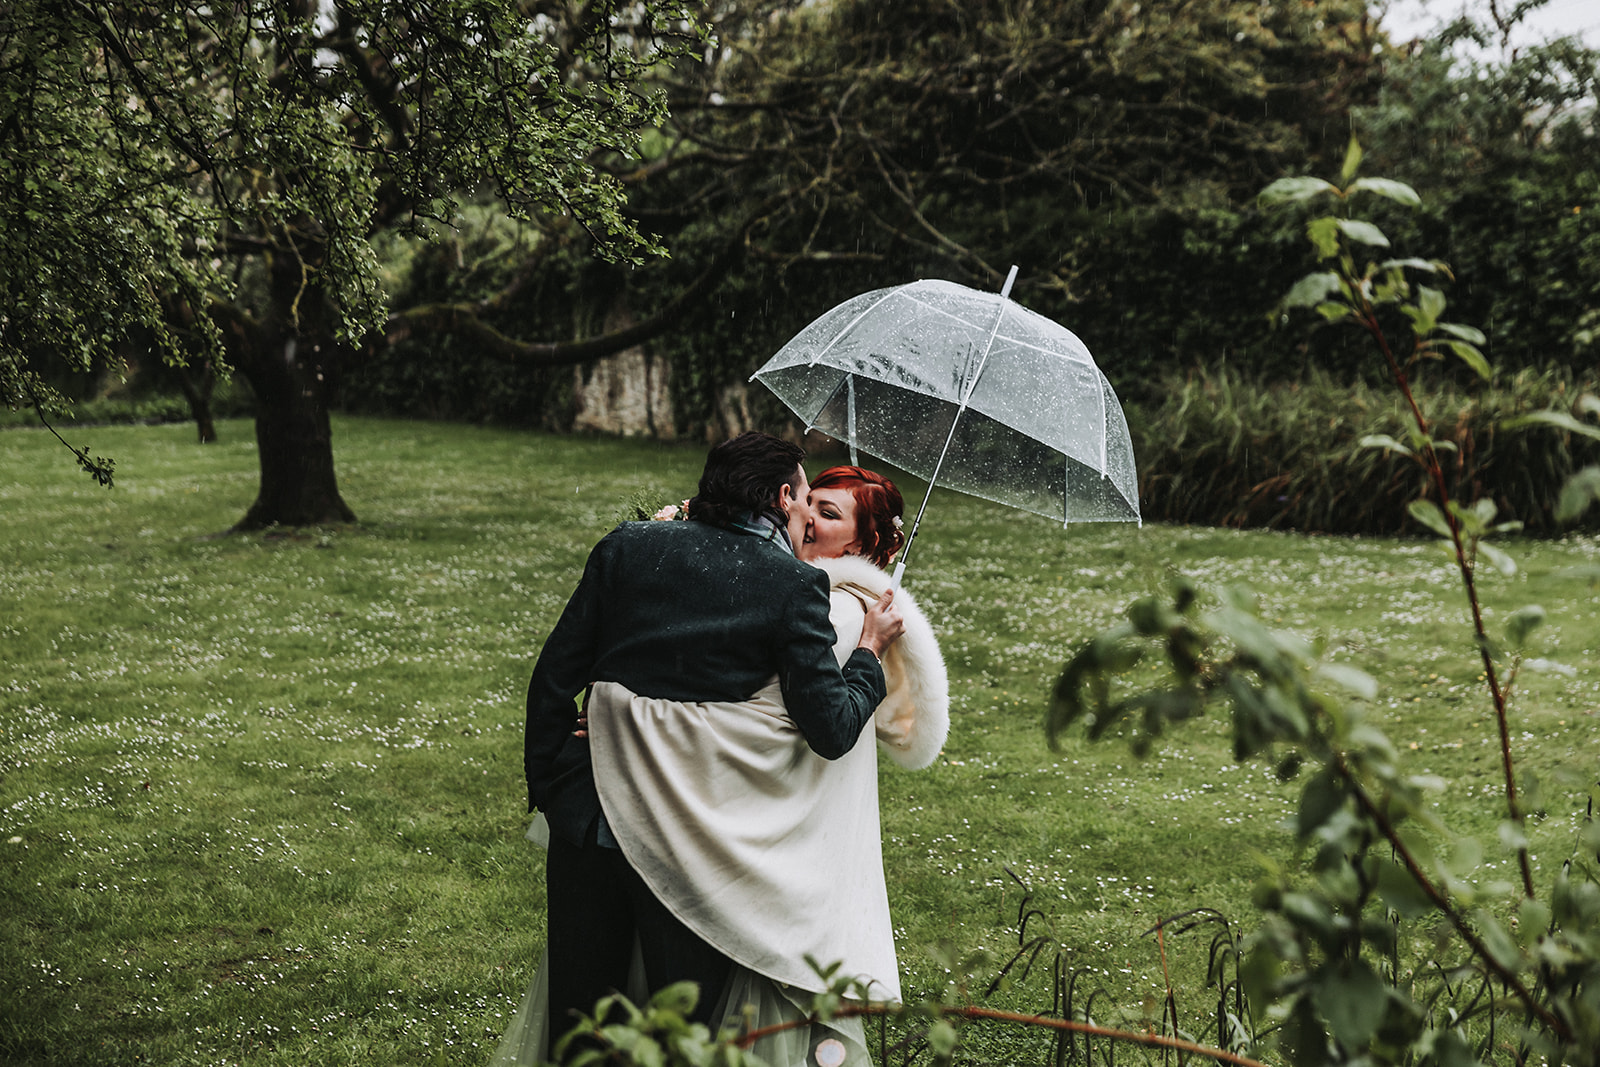 wedding photos with umbrella in the rain